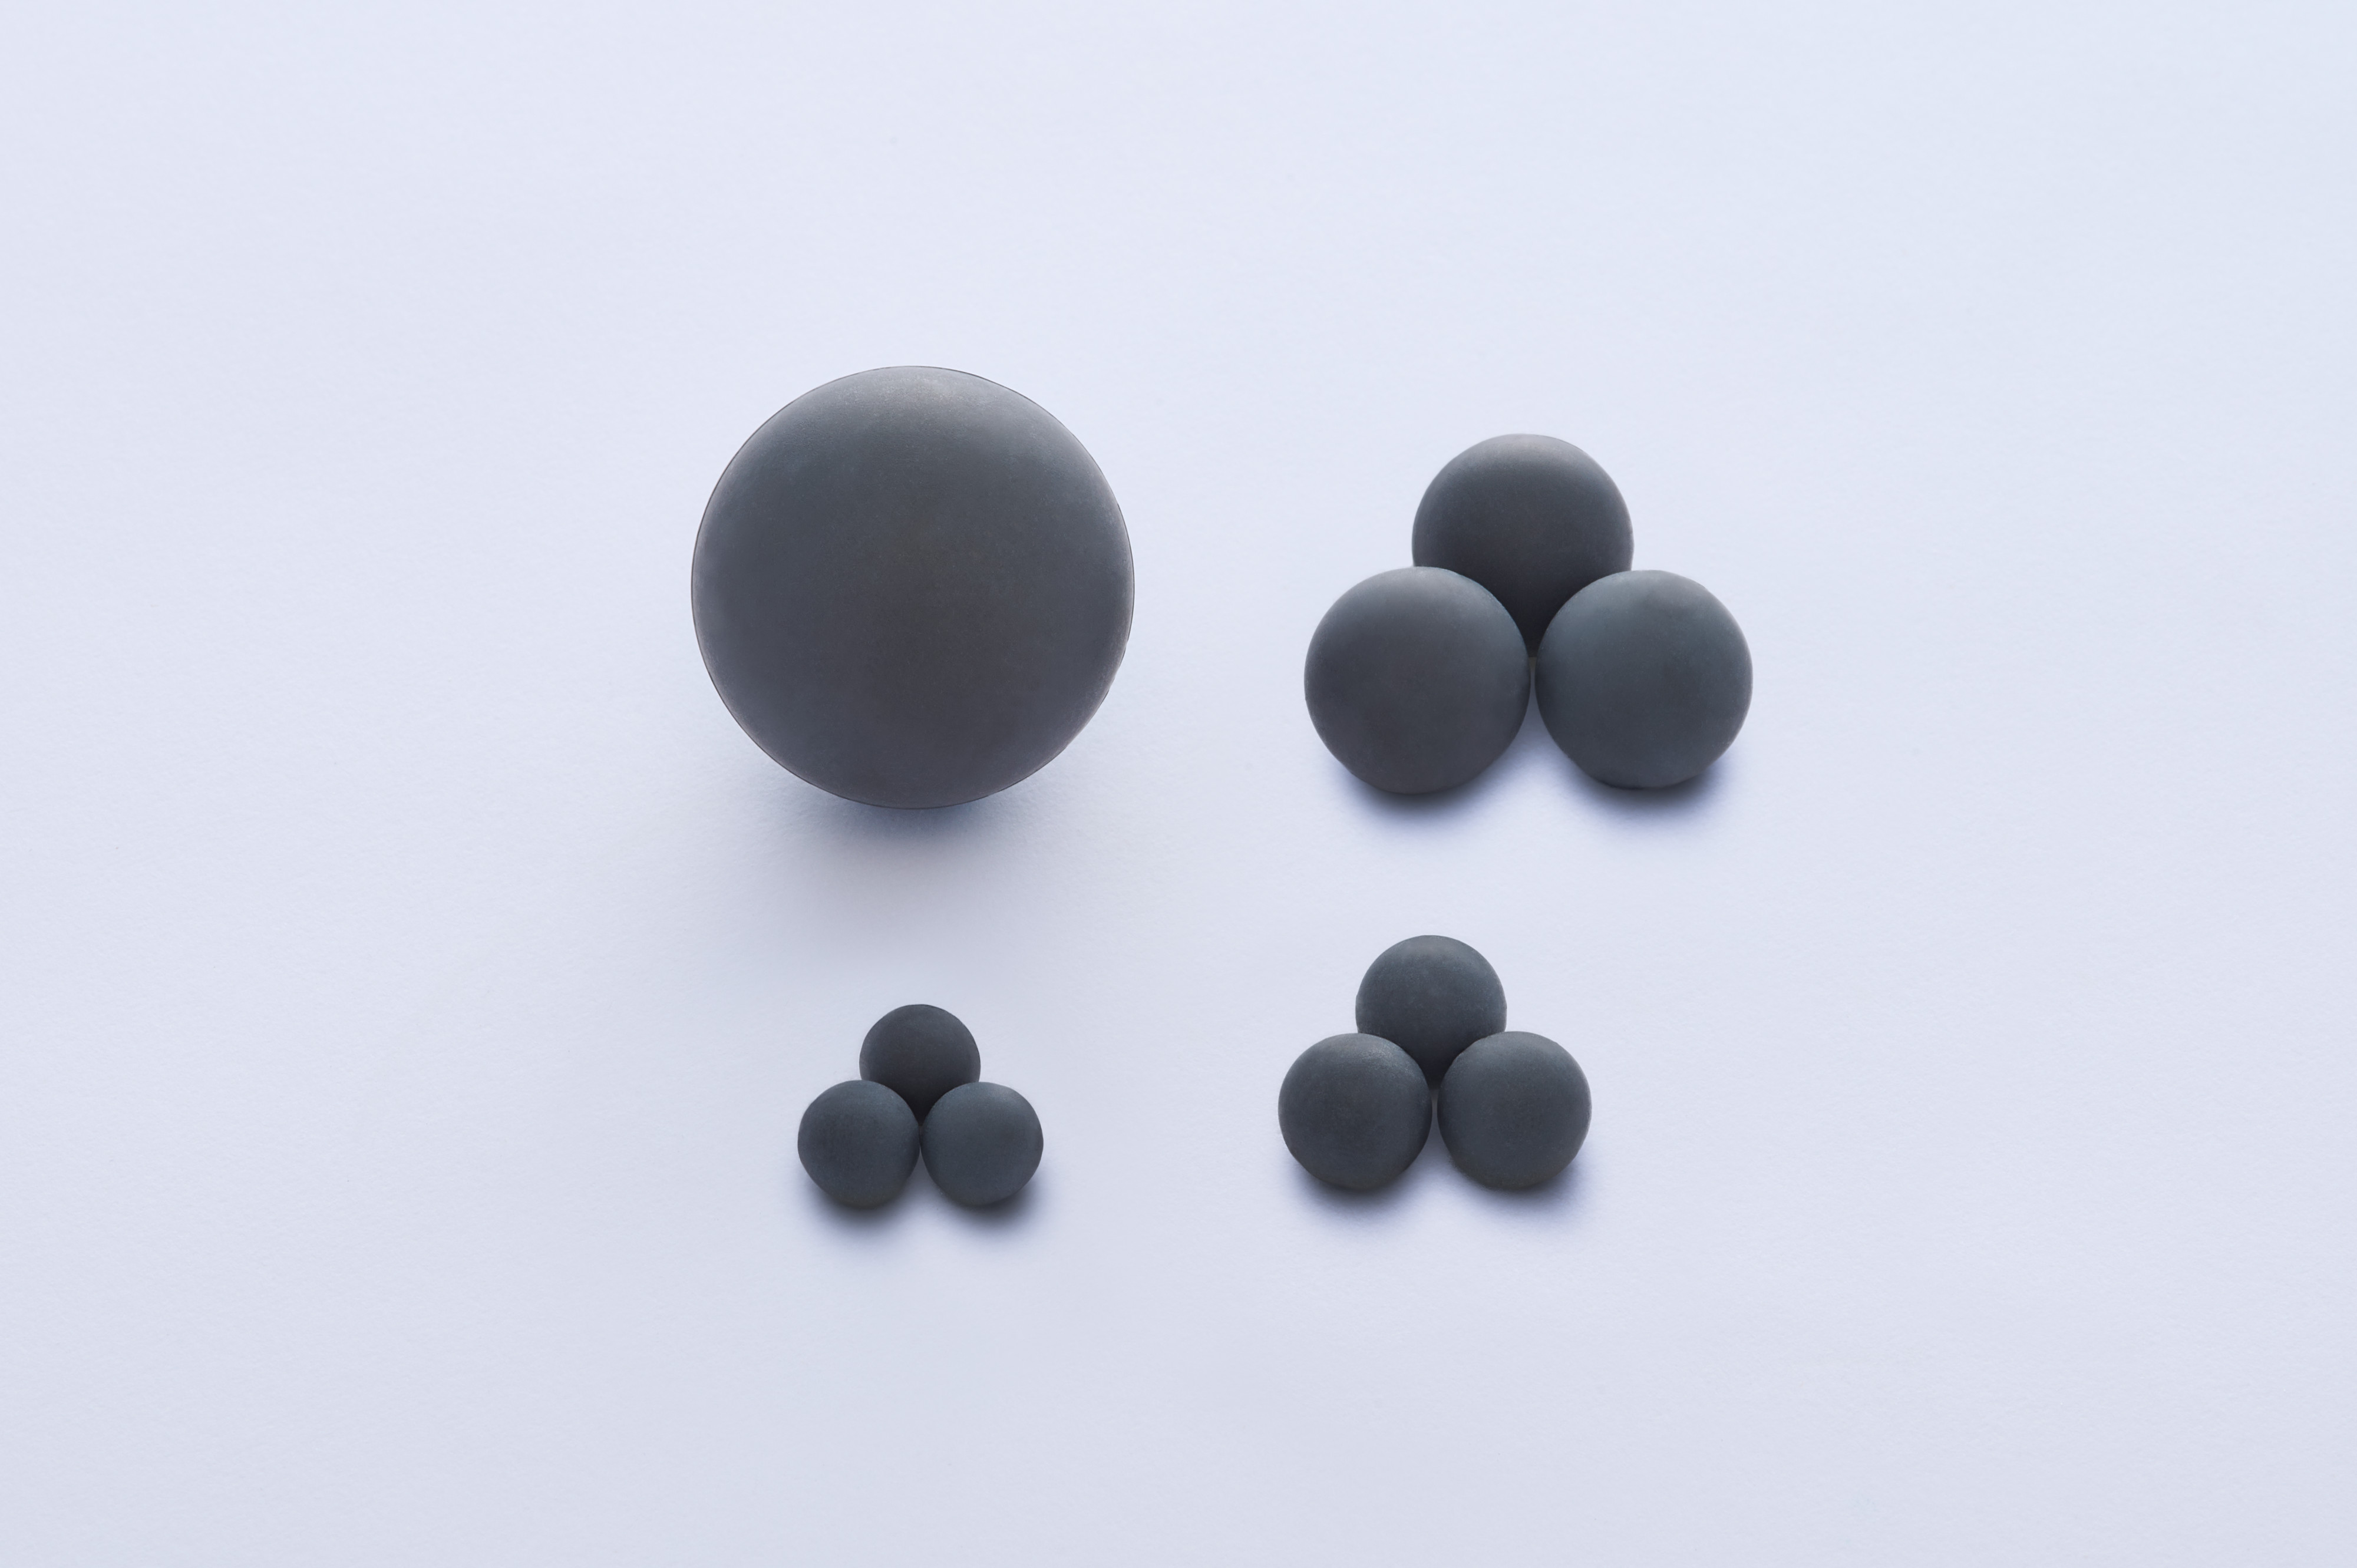 Toshiba ceramic balls